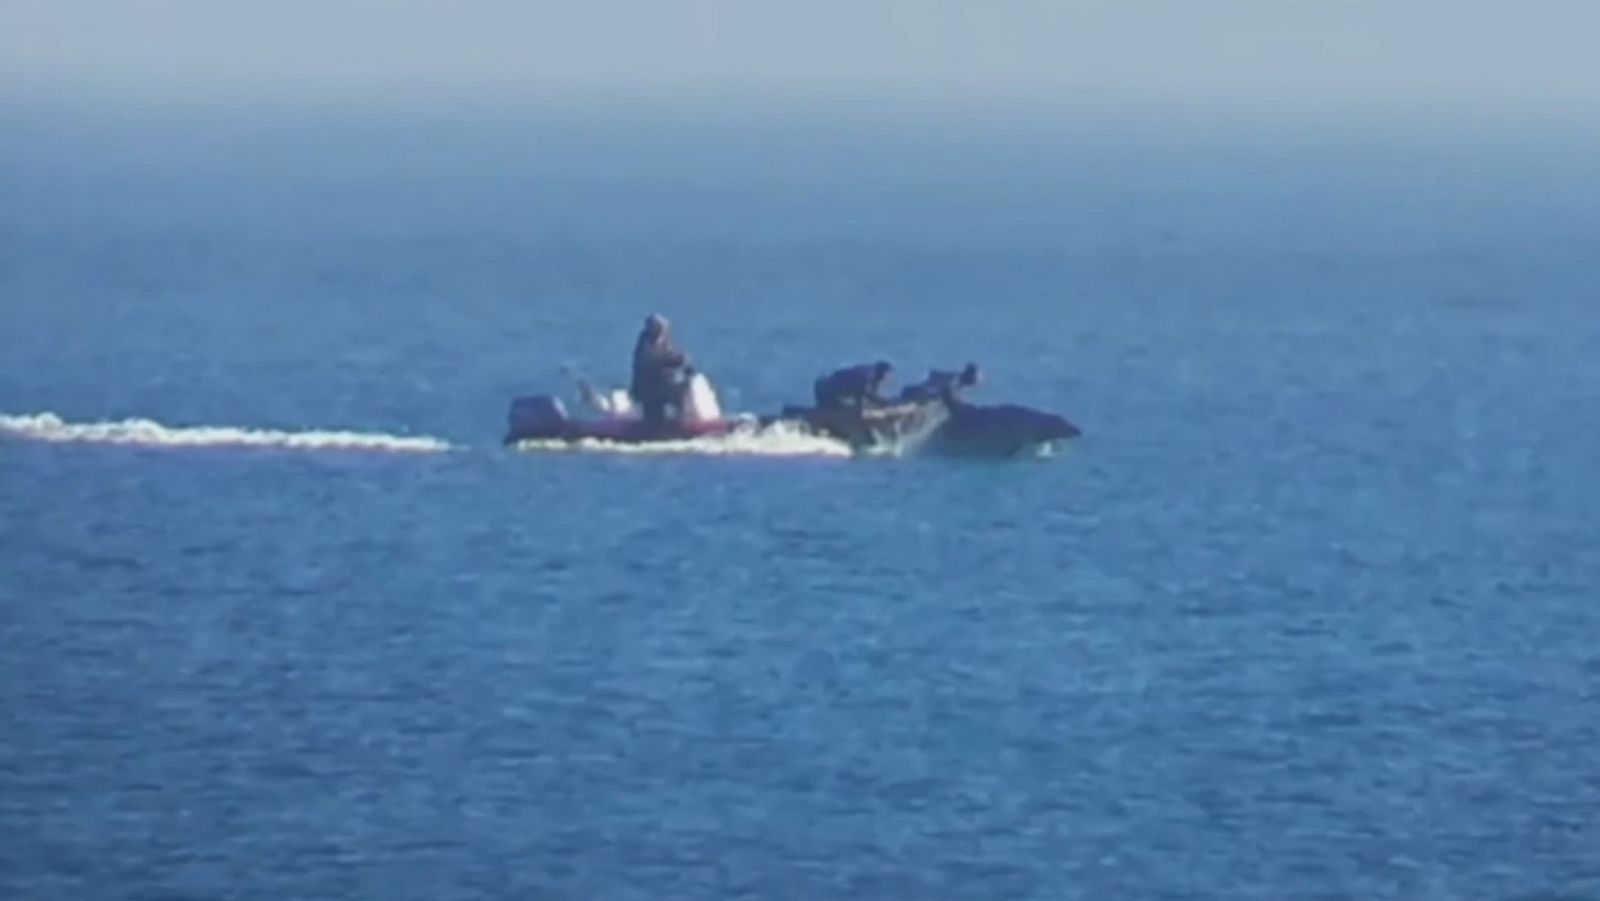 Pantallazo del vídeo en el que se puede ver la persecución a los delfines.